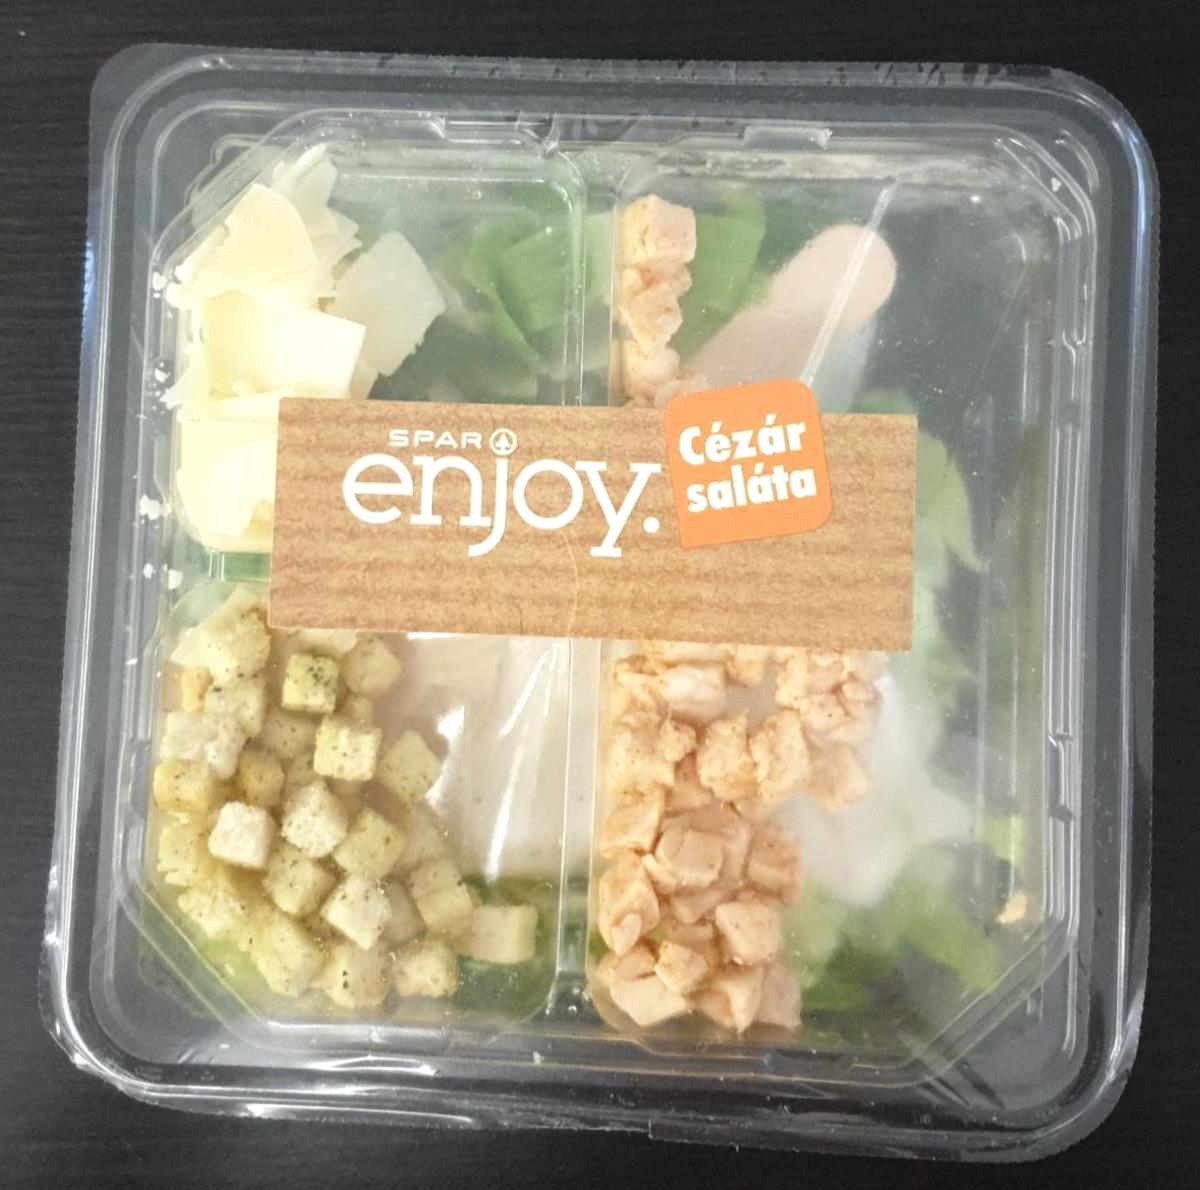 Képek - Cézár saláta Spar enjoy